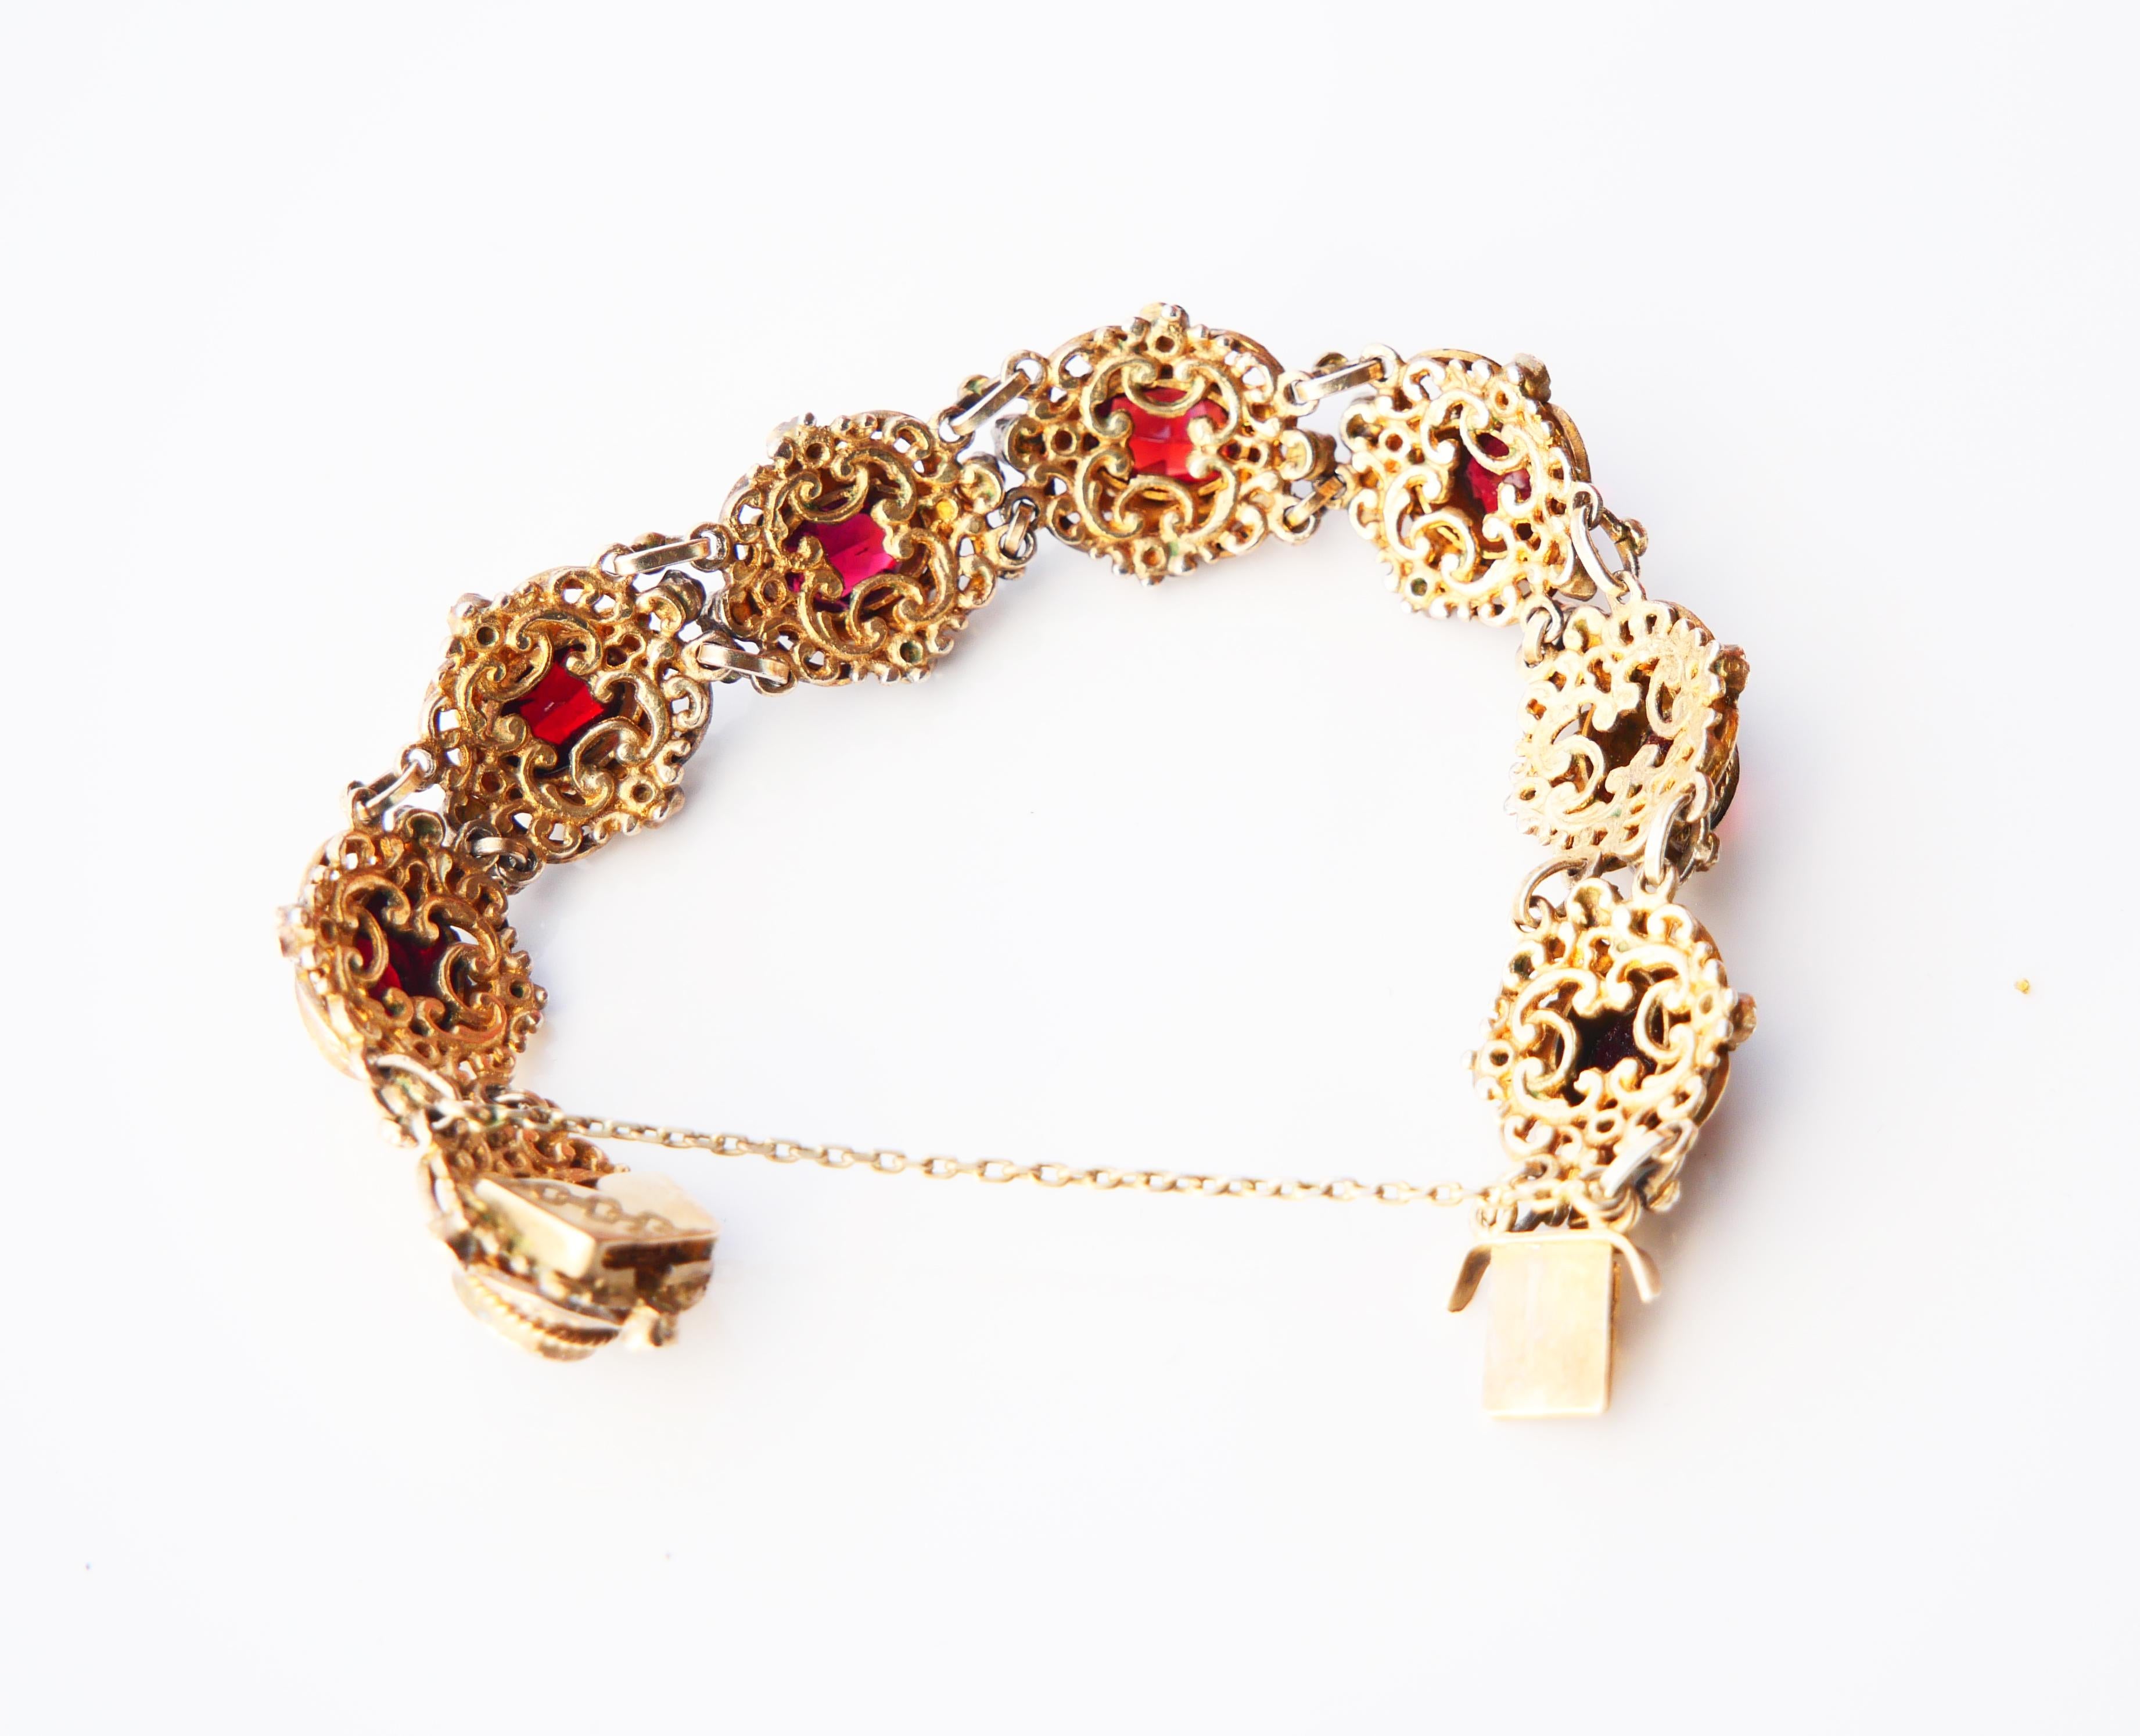 Antique Austrian Bohemian Bracelet Garnets Seed Pearls Enamel / 18cm / 34gr For Sale 2